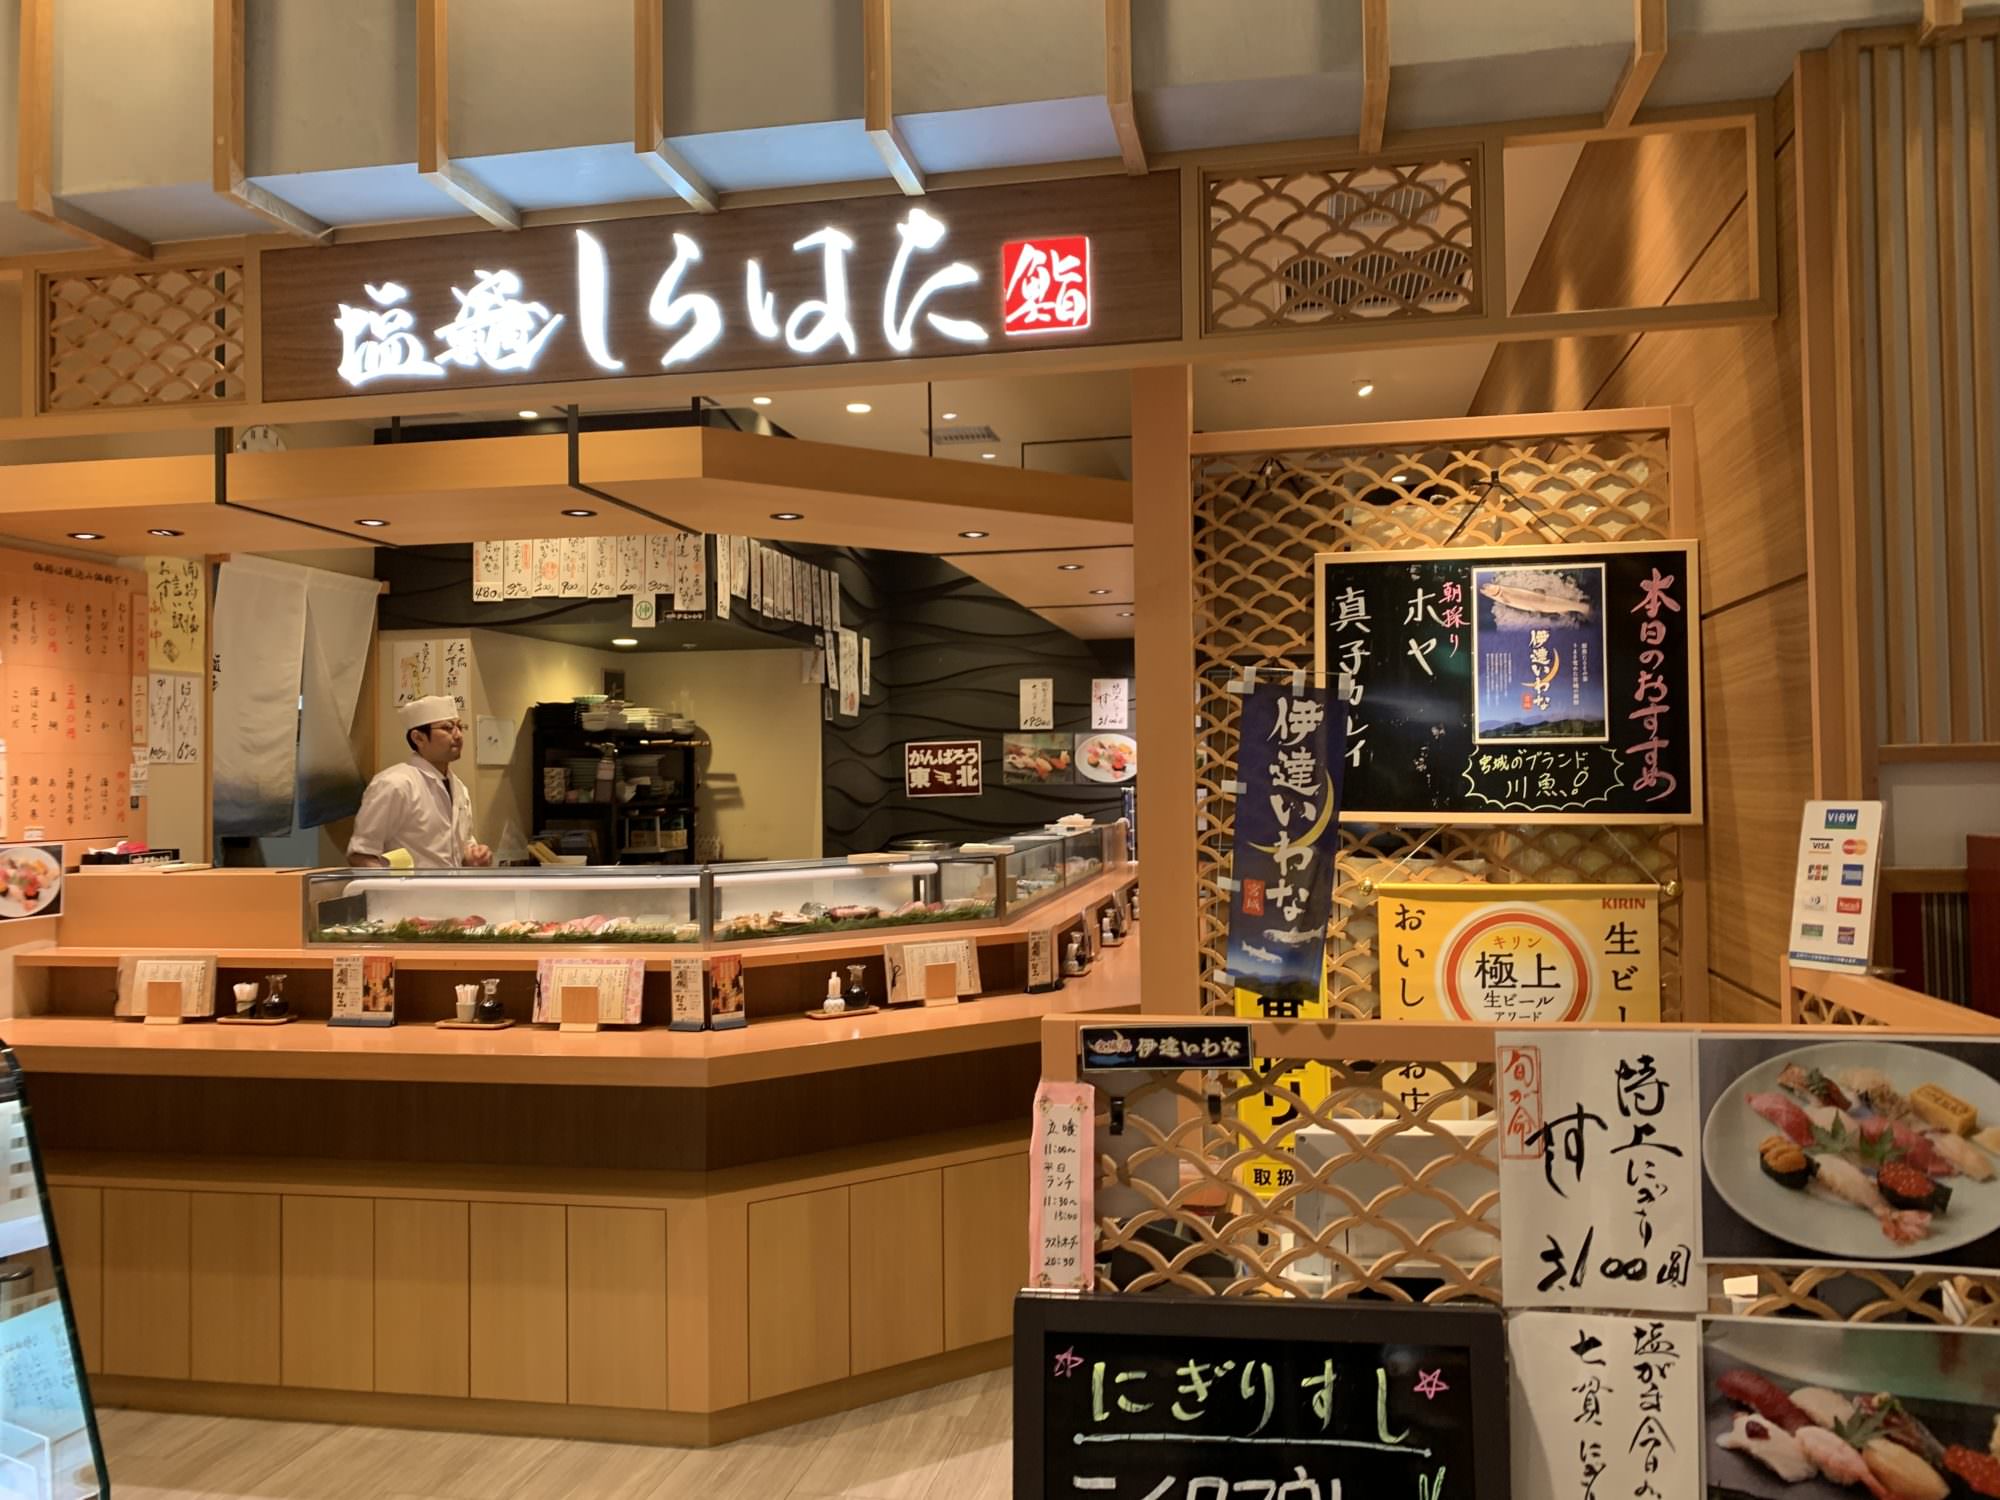 仙台グルメ 立ち喰い鮨 塩竈 しらはた 仙台駅でサクッとお寿司を キャリア を脱ぎ捨てて